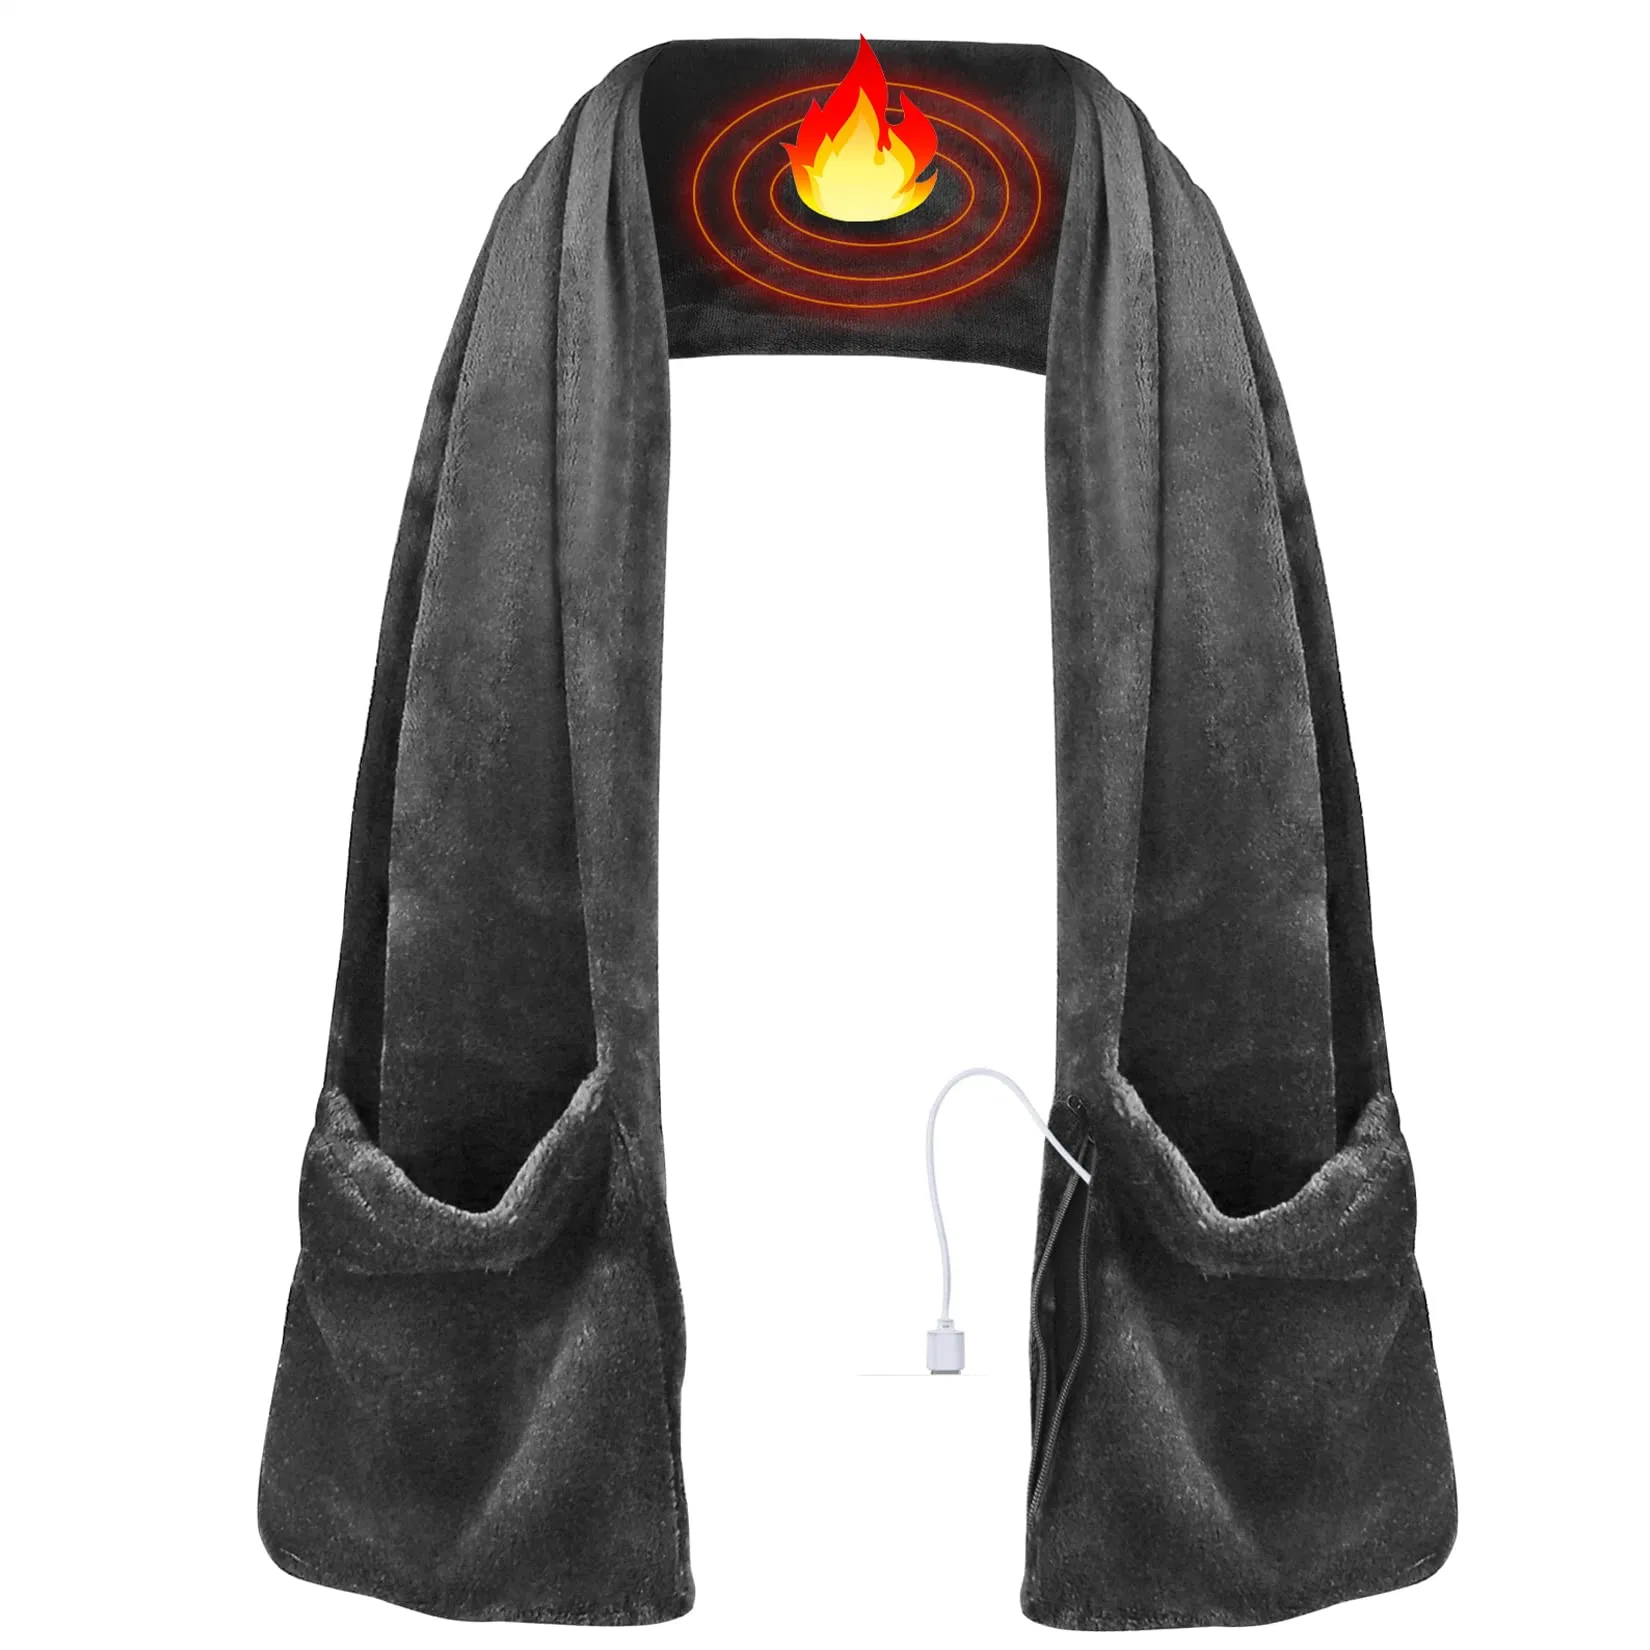 Bufanda Bufanda caliente calentada calentamiento recargable protector de cuello bufanda caliente para el invierno